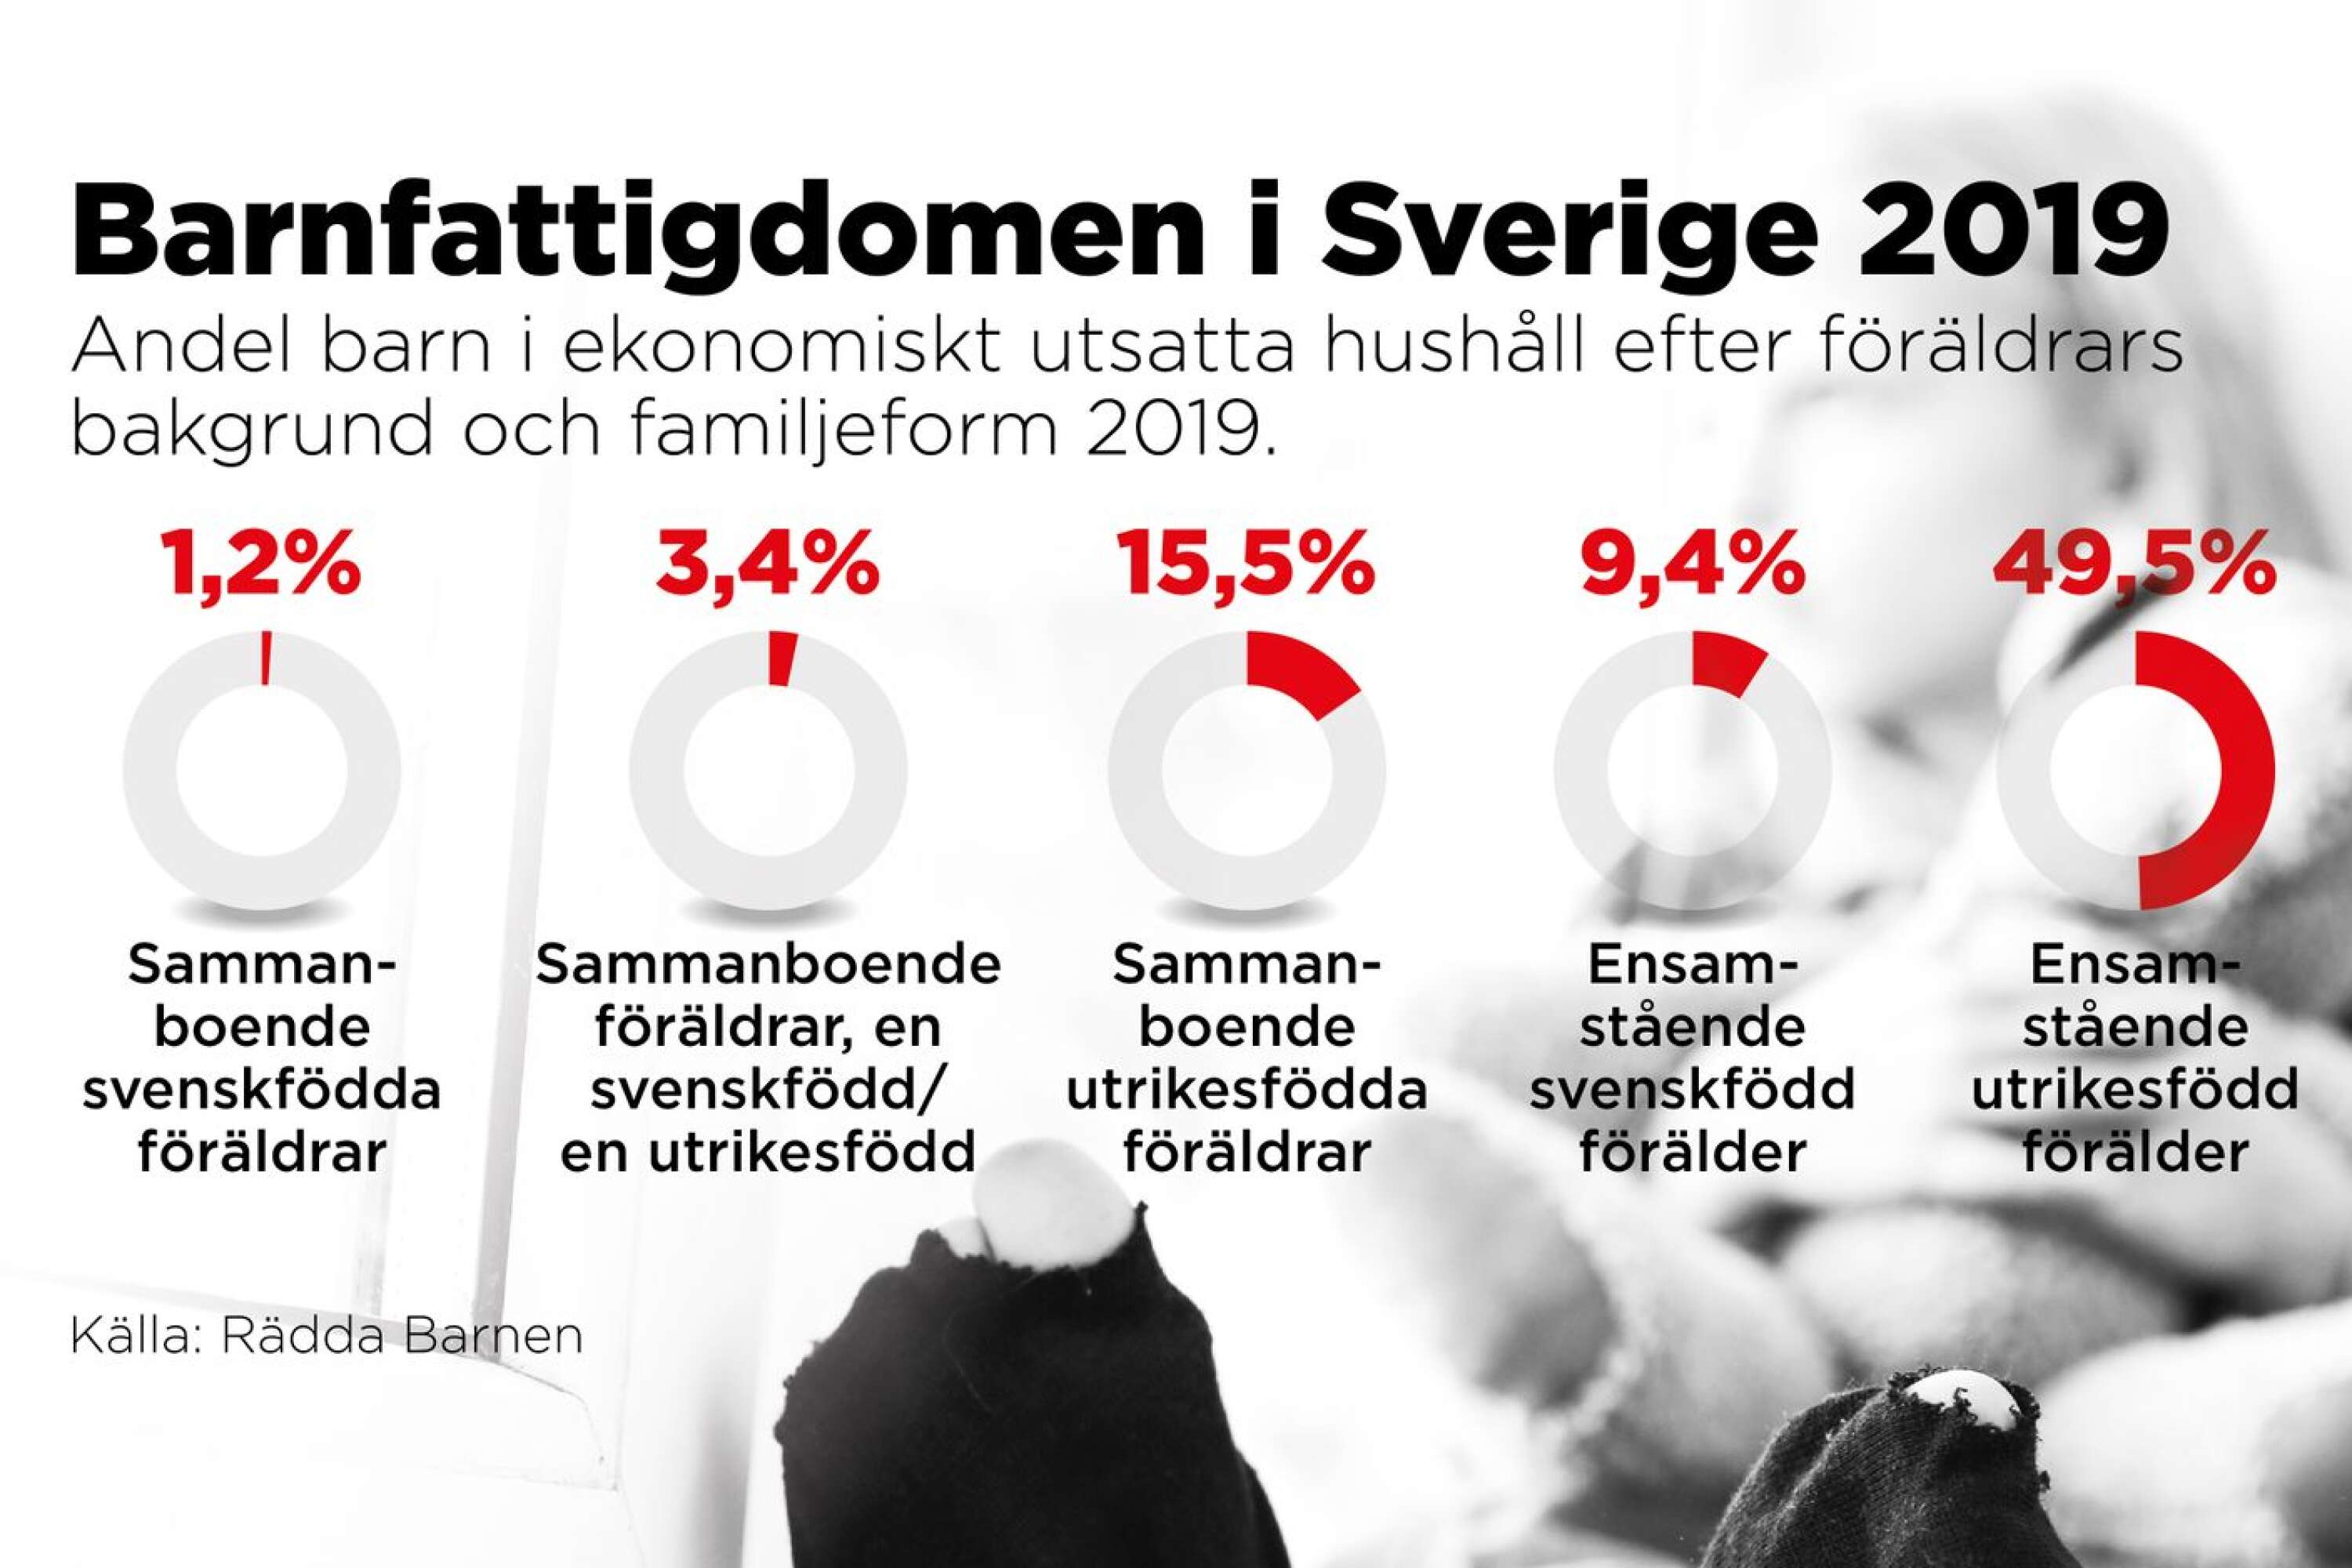 Barnfattigdom i Sverige, grafik.